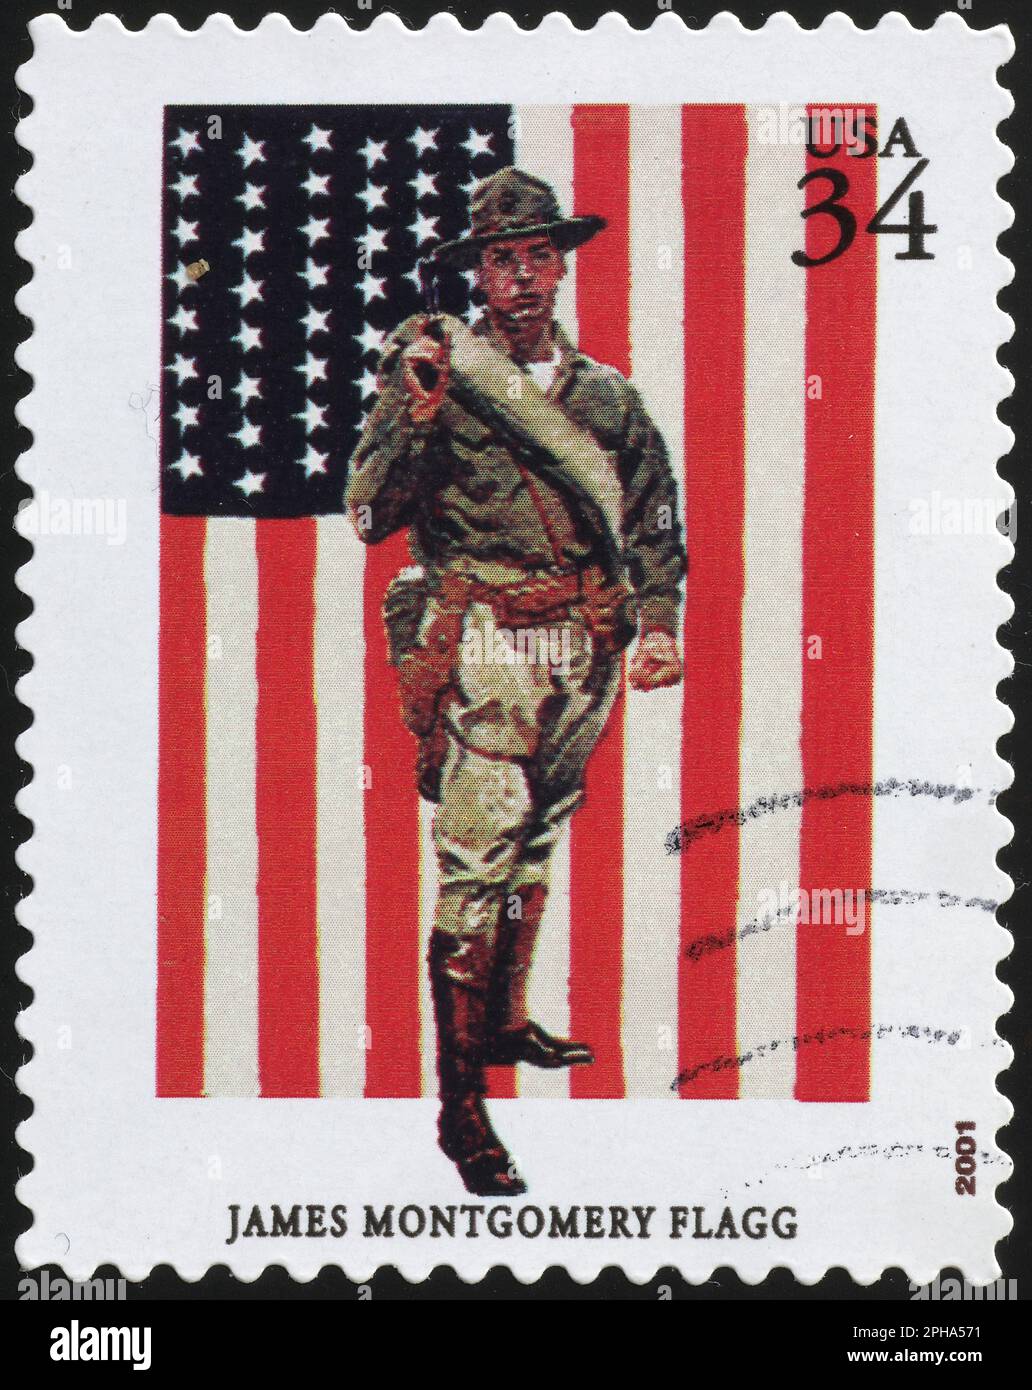 Illustration de James Montgomery Flagg sur timbre-poste américain Banque D'Images